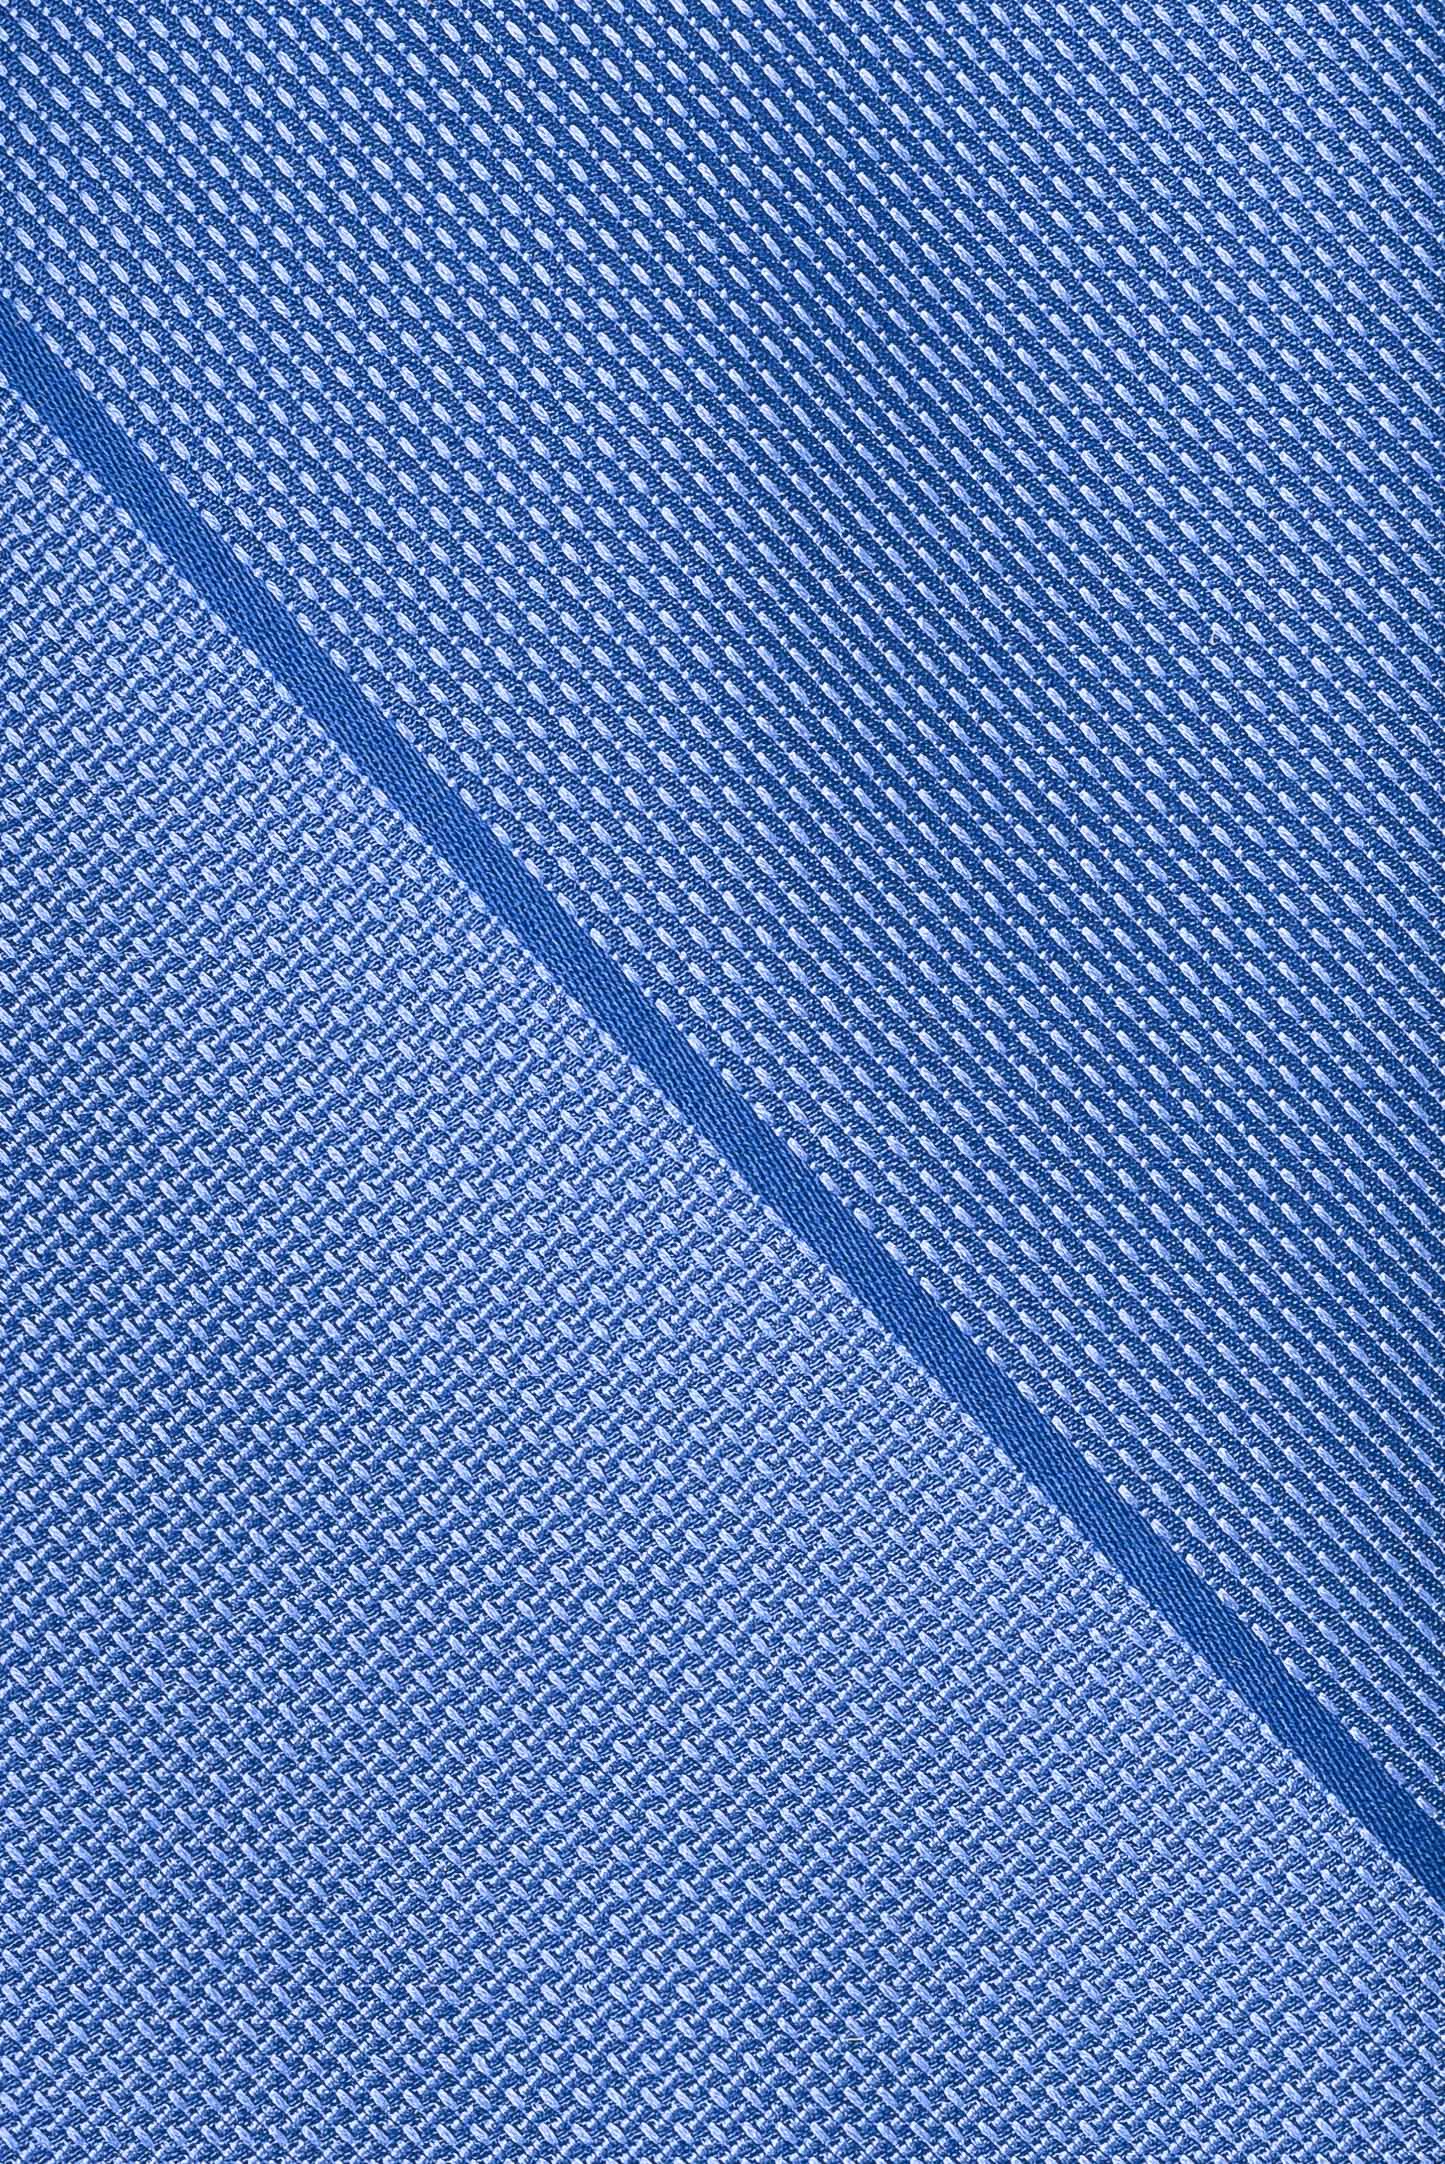 Галстук STEFANO RICCI CCXDD 40212, цвет: Синий, Мужской